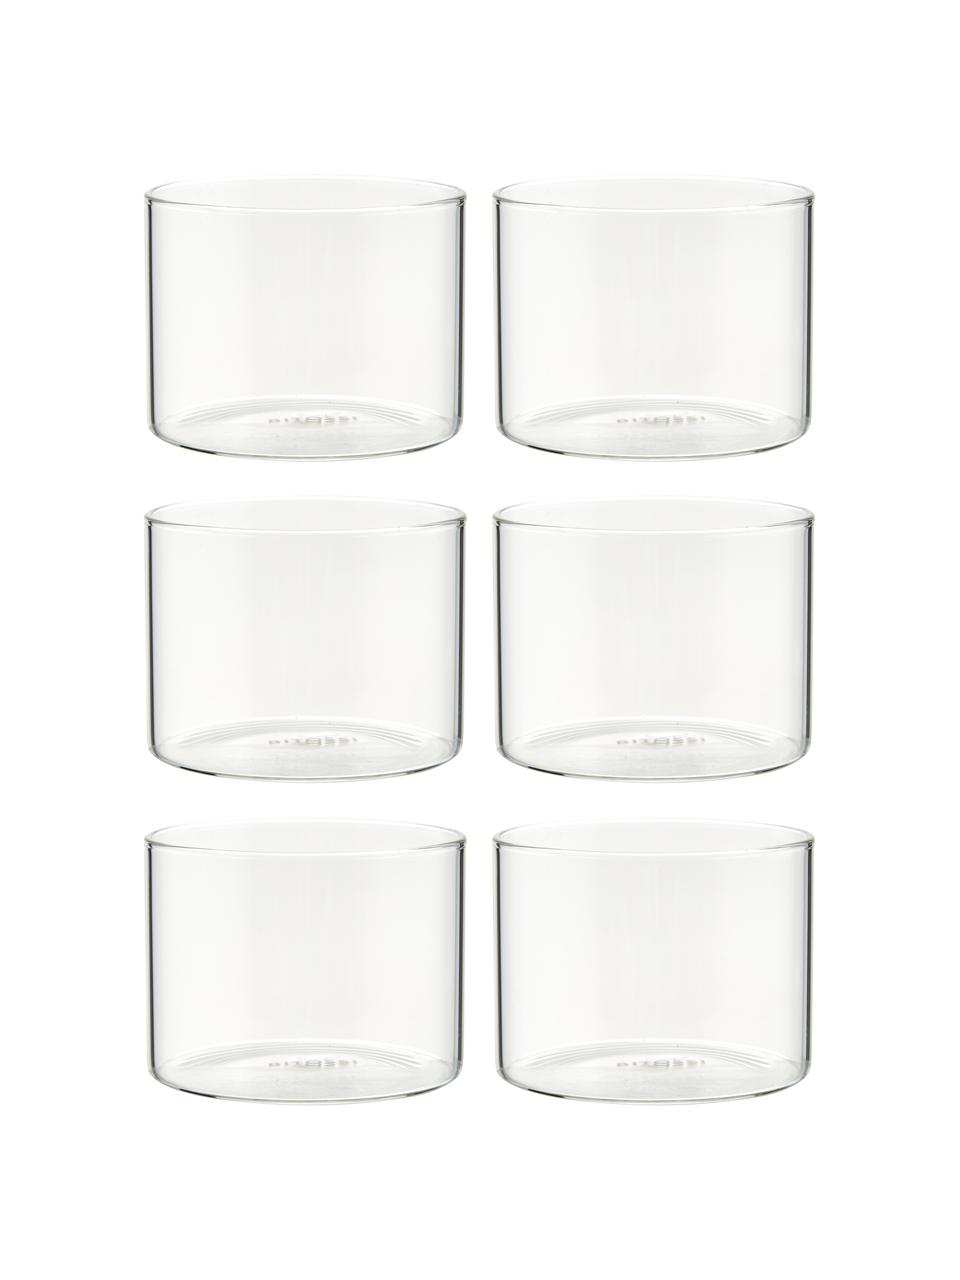 Waterglazen Boro van borosilicaatglas, 6 stuks, Borosilicaatglas, Transparant, Ø 8 x H 6 cm, 200 ml